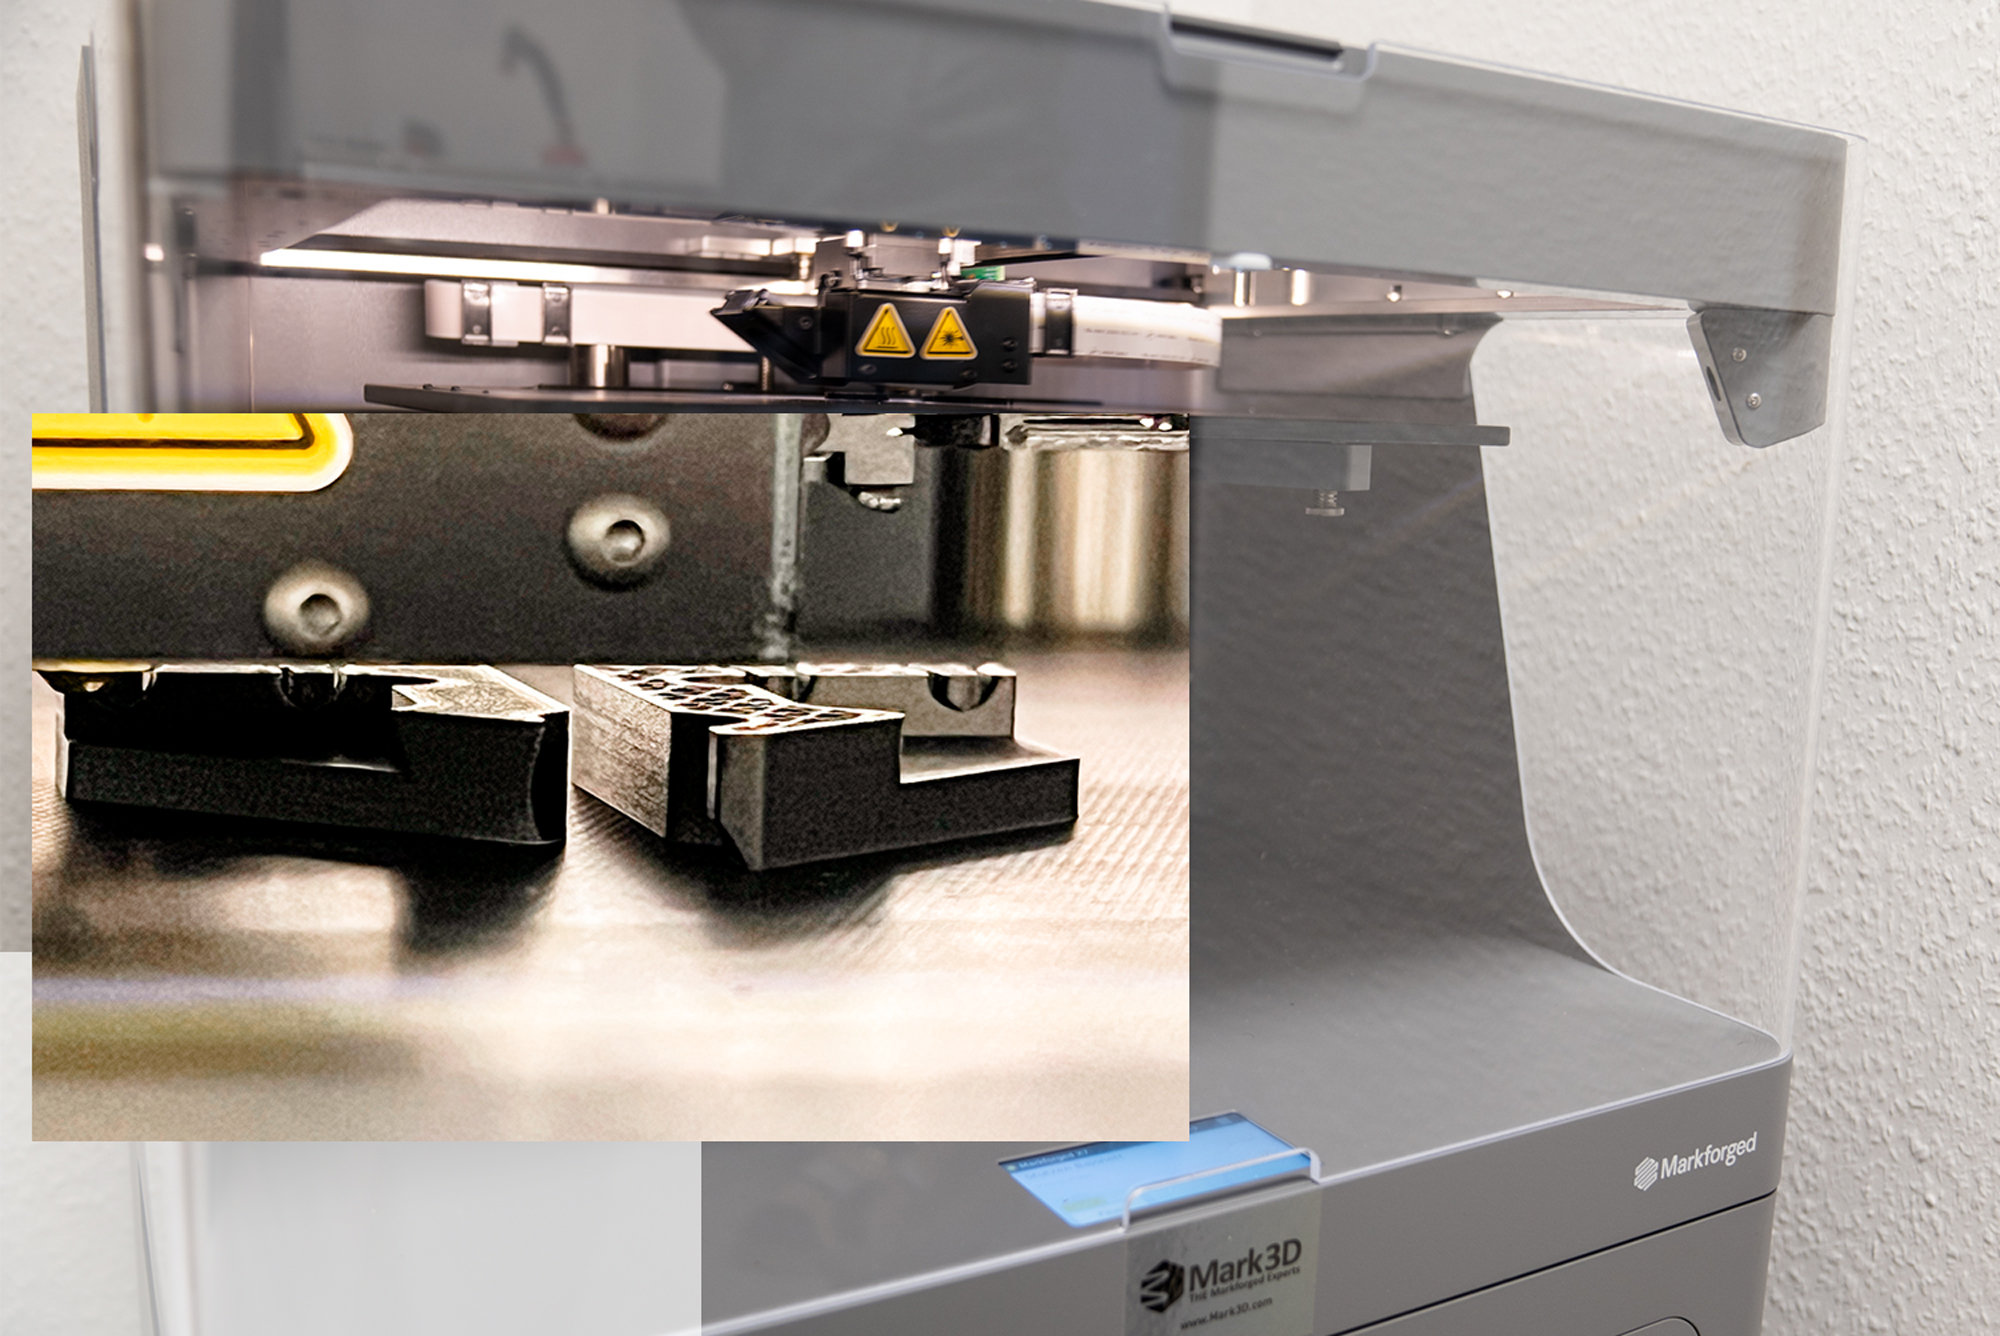 Umweltbewusst und effizient: Zusätzlicher 3D-Drucker zur Herstellung hochwertiger Bauteile